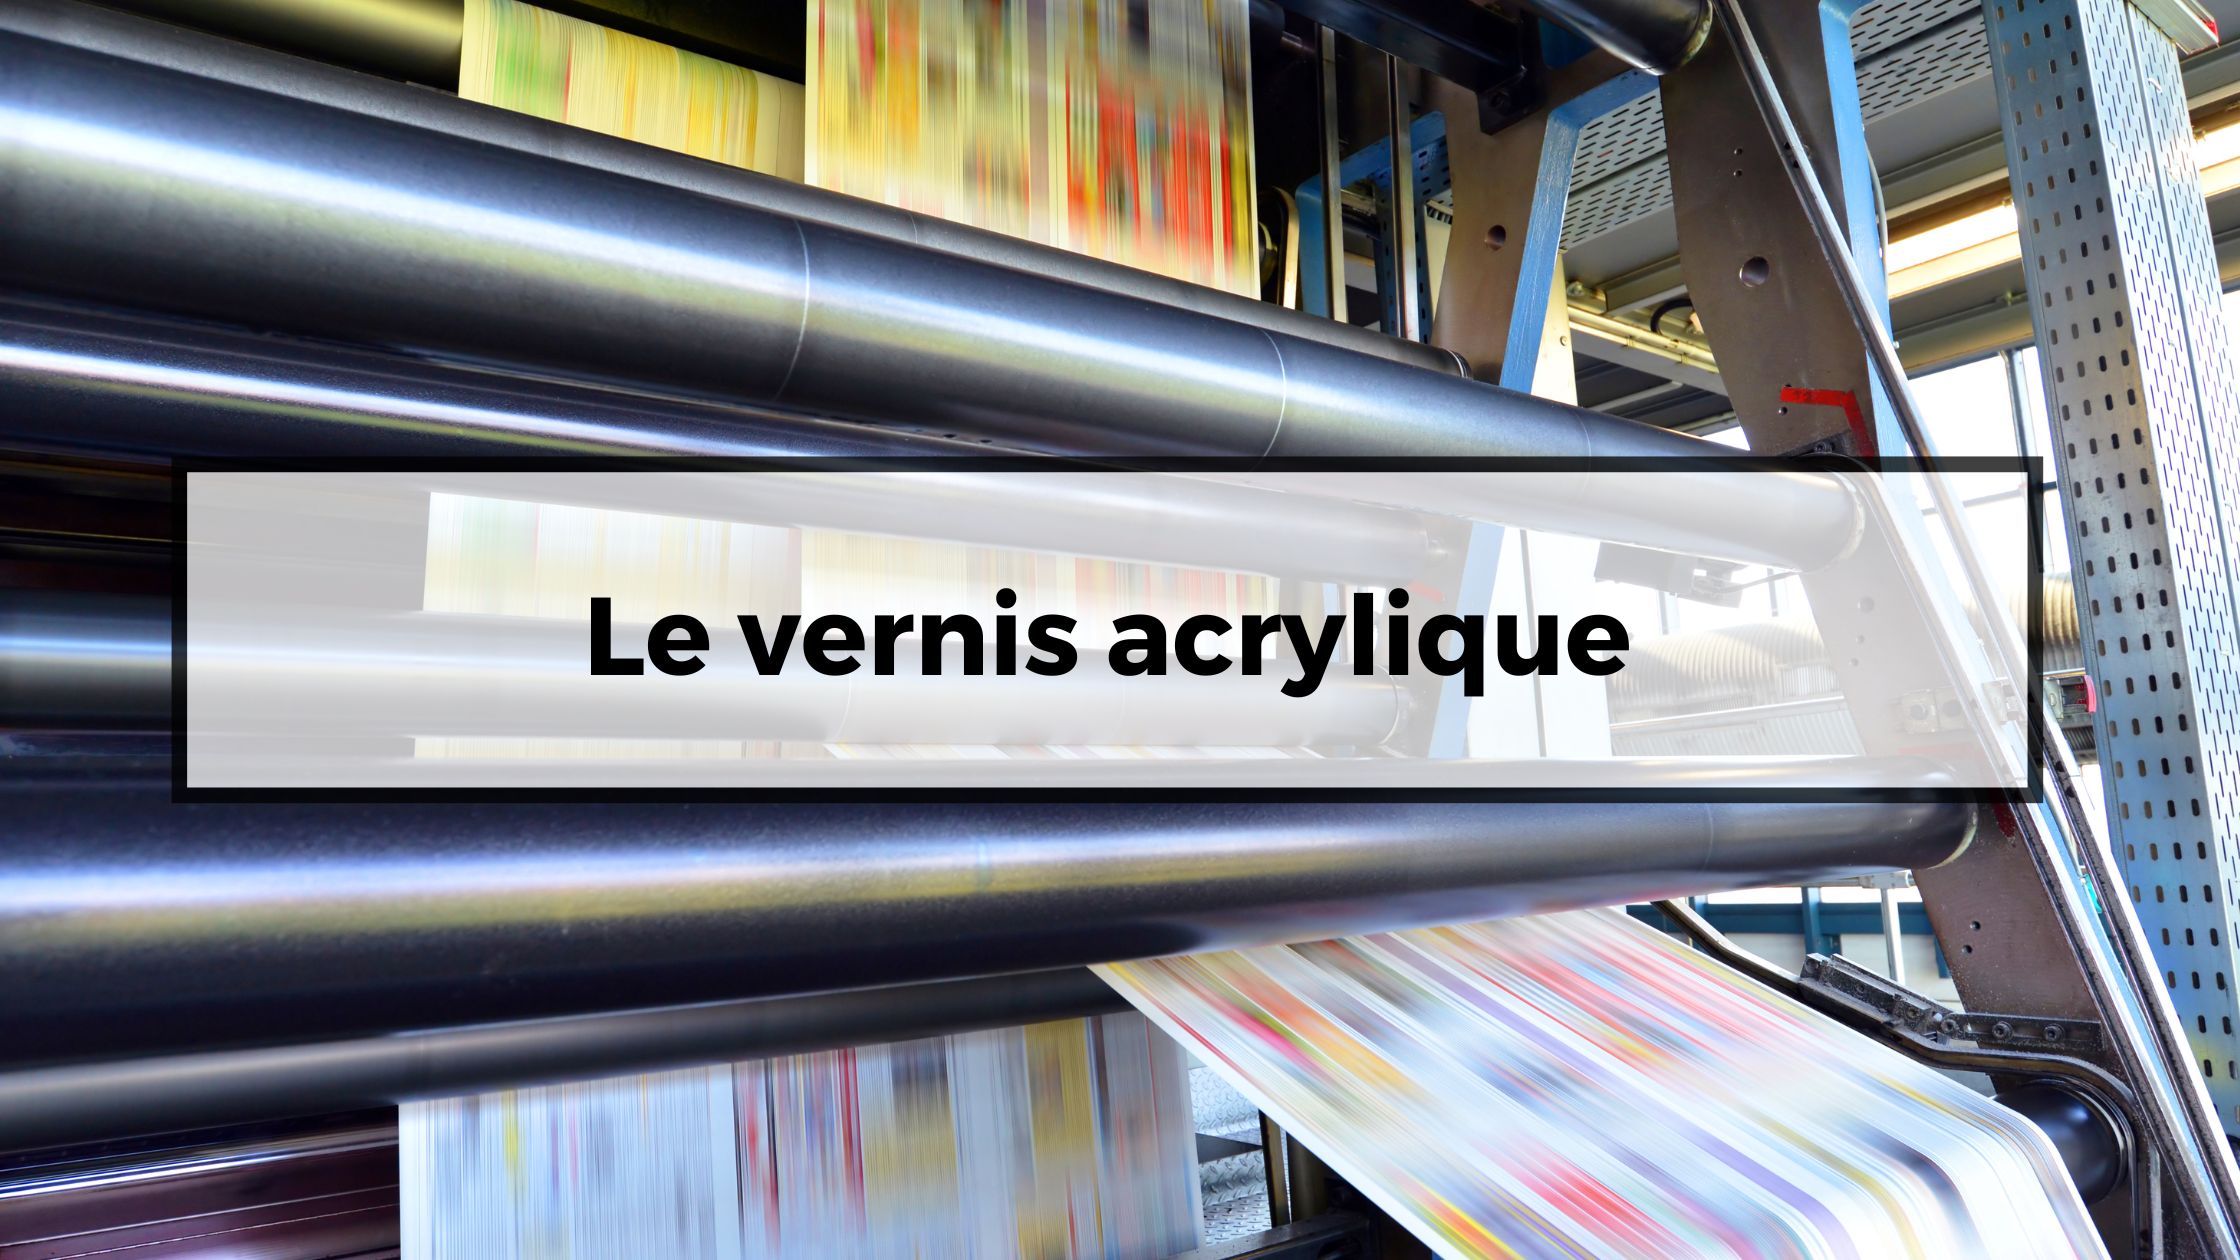 Le vernis acrylique - BOOKLETS PRINT